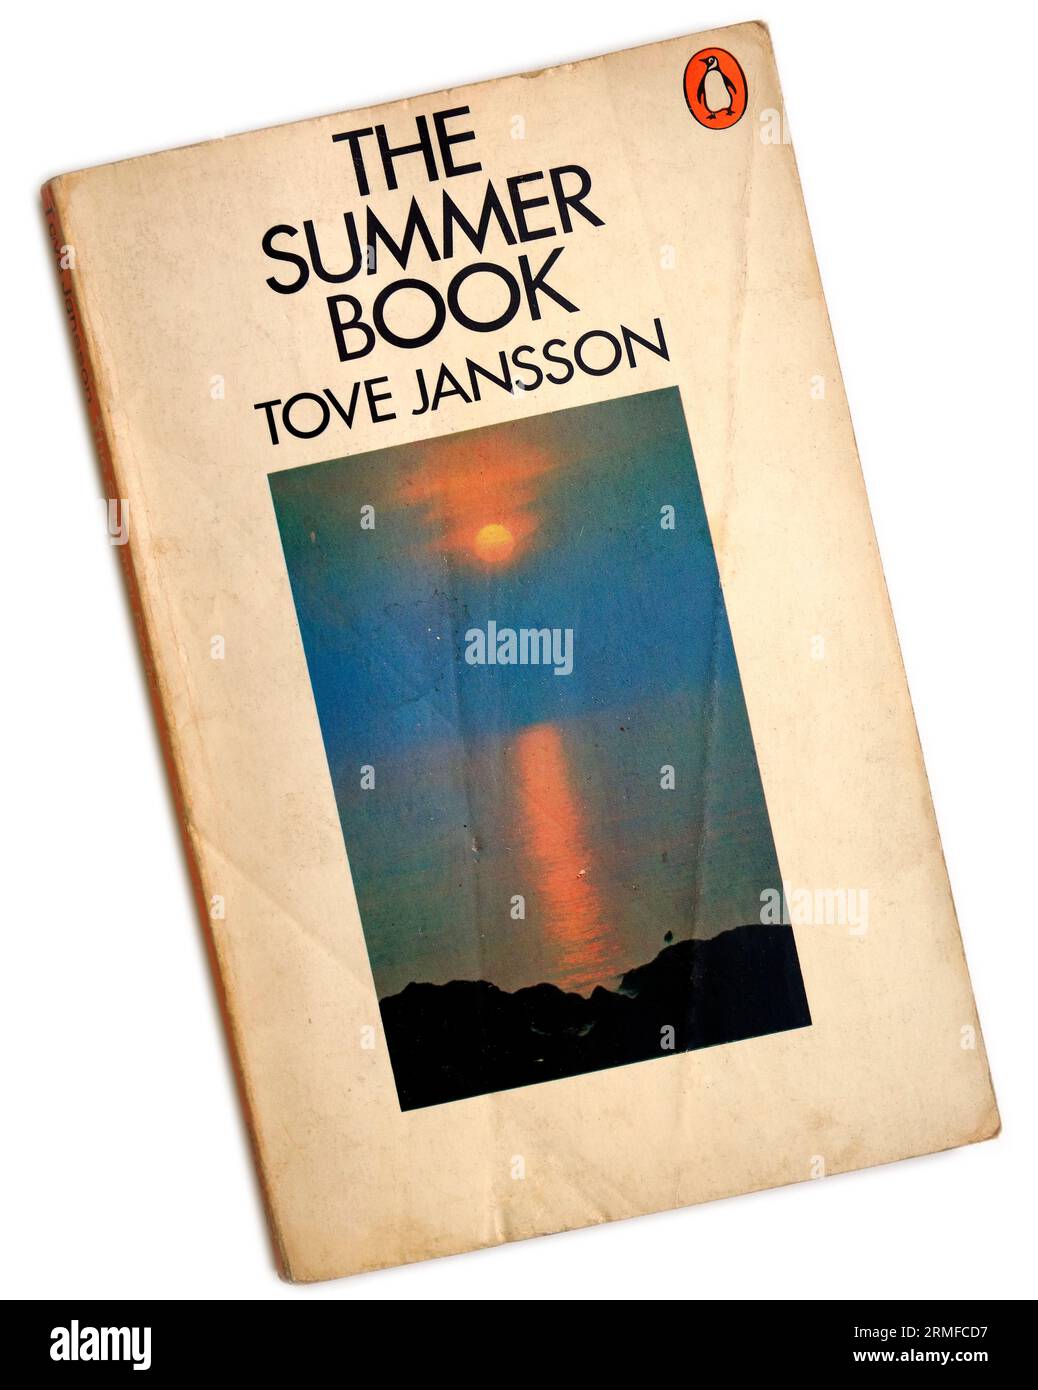 Tove Jansson - le livre d'été. Couverture de livre de poche sur fond blanc Banque D'Images